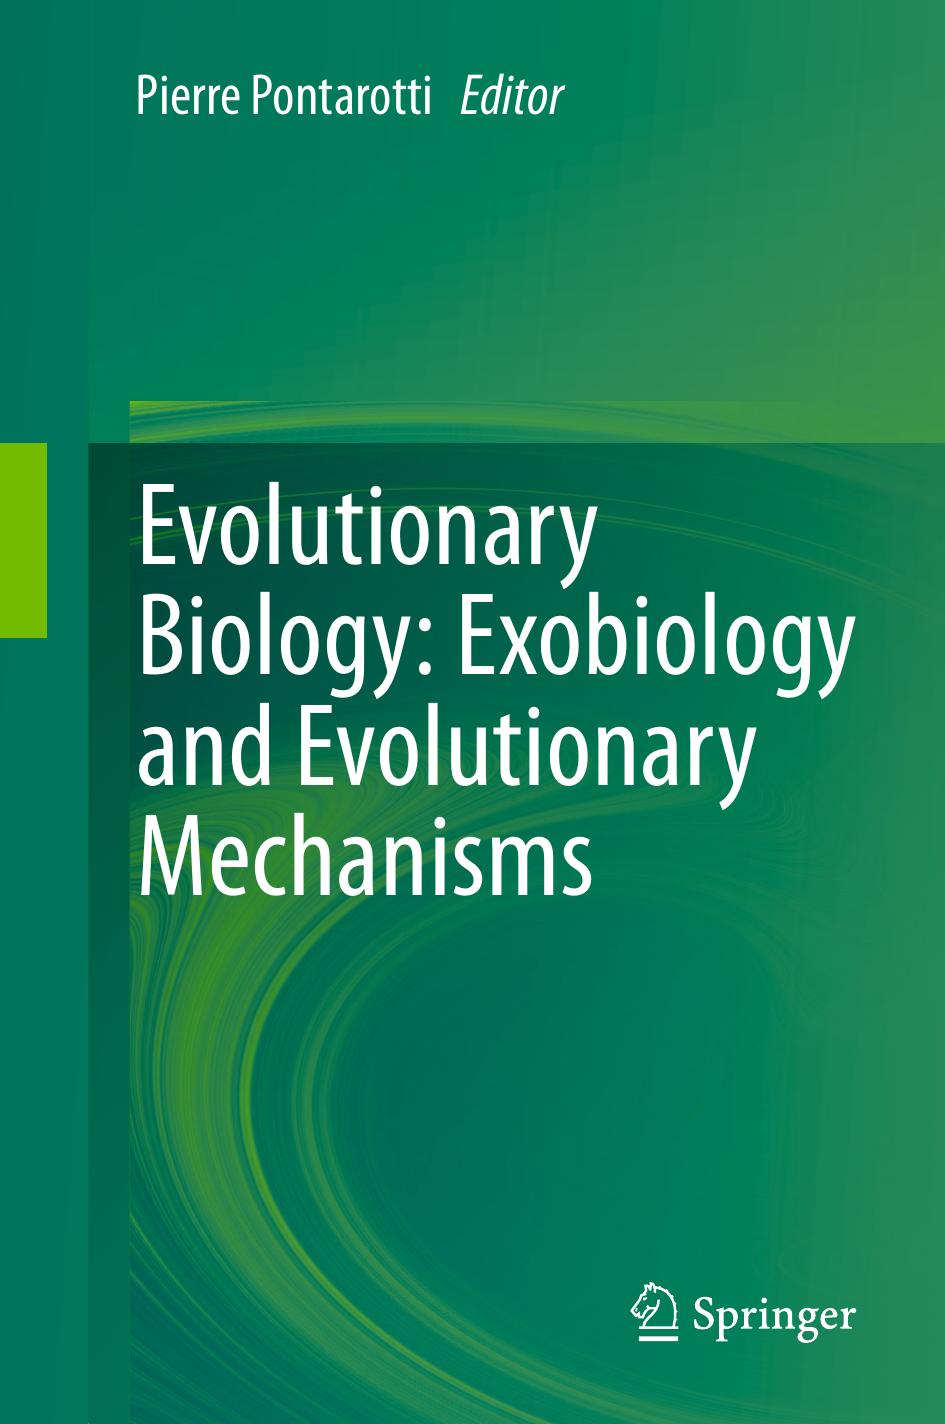 Evolutionary Biology  Exobiology and Evolutionary Mechanisms 2013 ( PDFDrive.com )